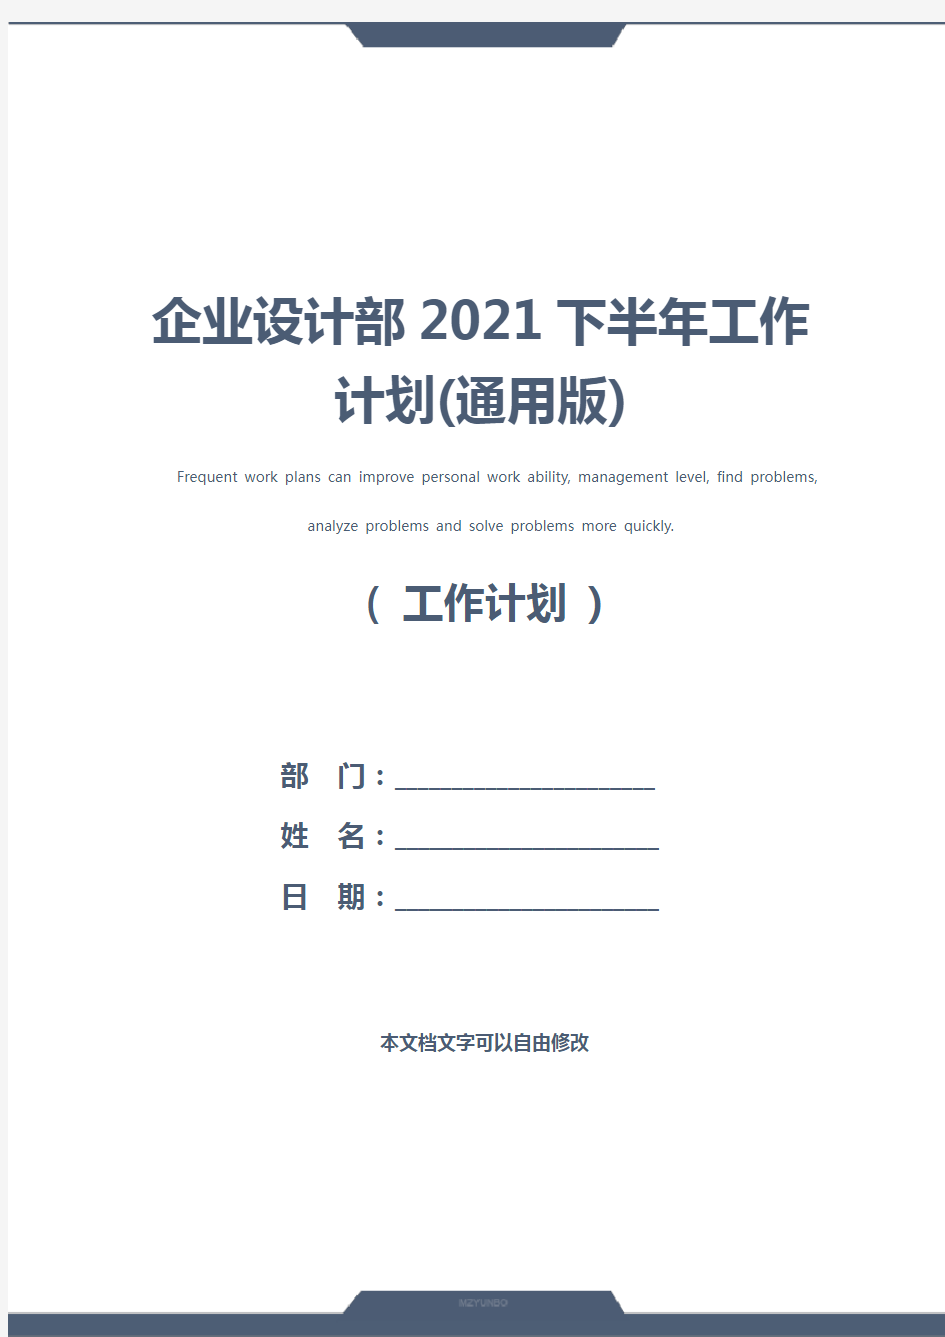 企业设计部2021下半年工作计划(通用版)